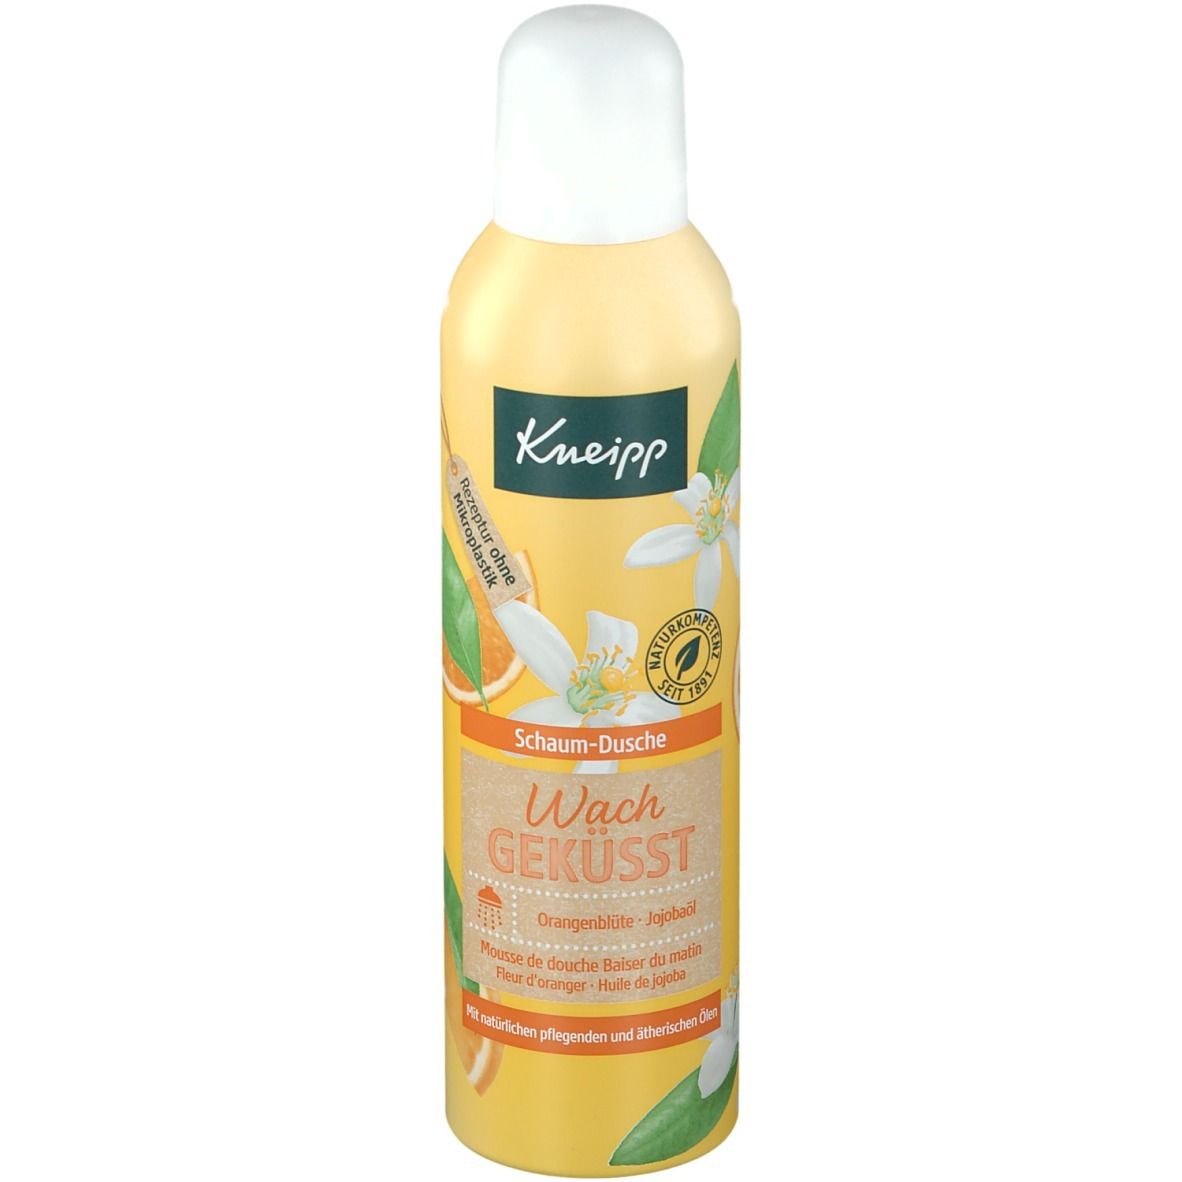 Kneipp® Schaum-Dusche Wachgeküsst